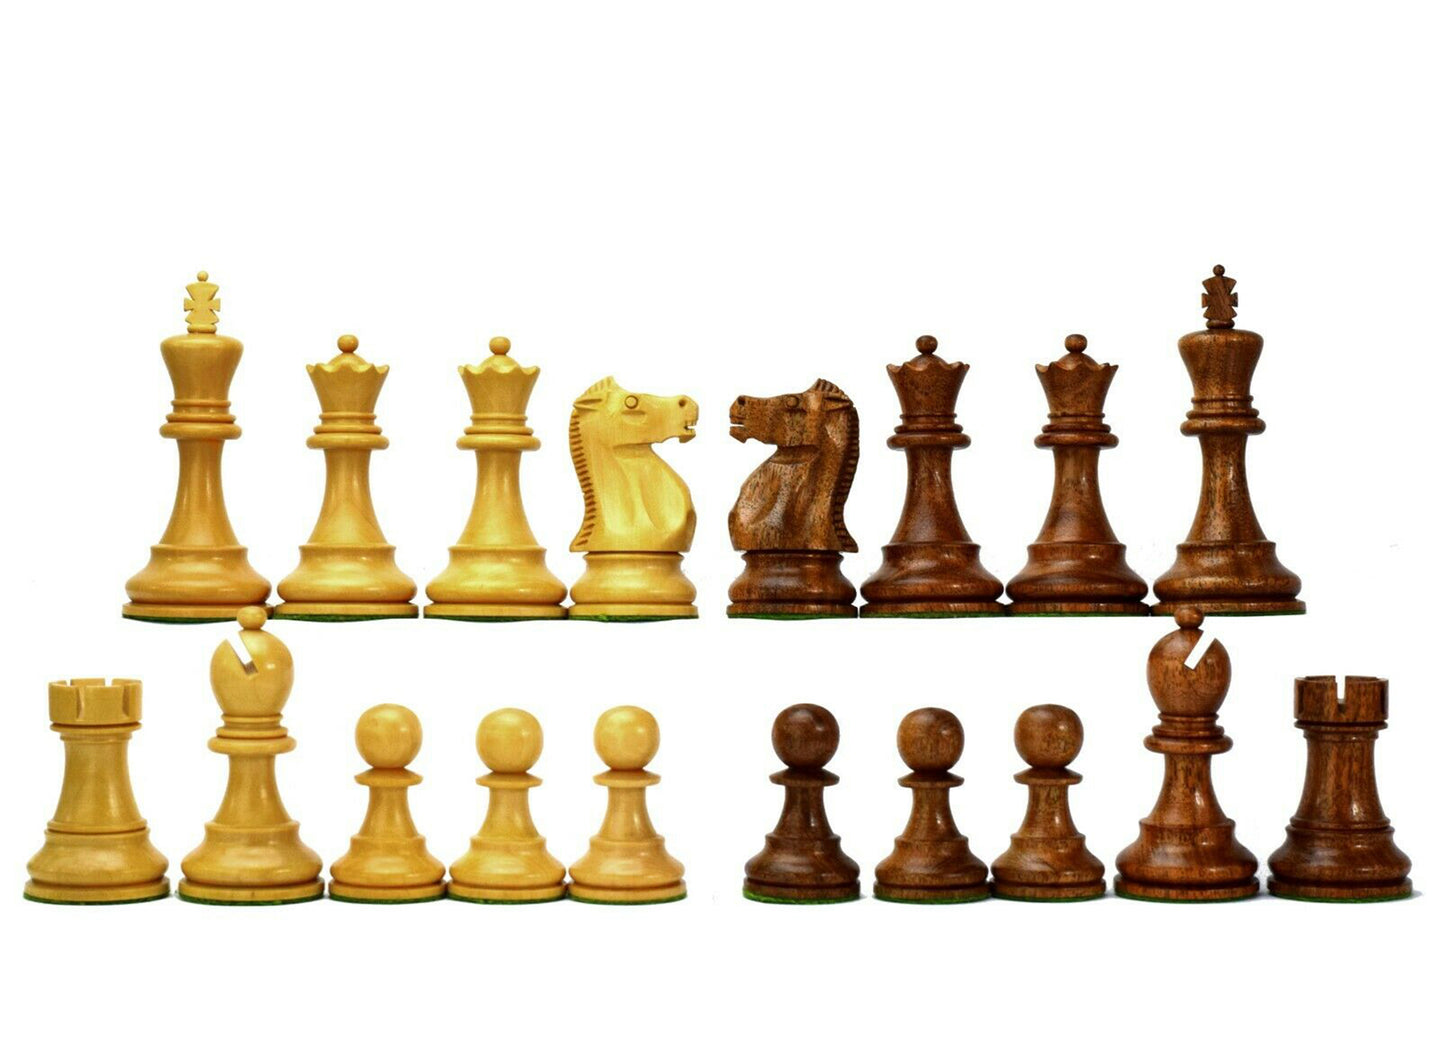 Série Fischer-Spassky (Championnat du monde d’échecs 1972) - Pièces d’échecs KH 3.75 » Bois d’acacia buis Inde